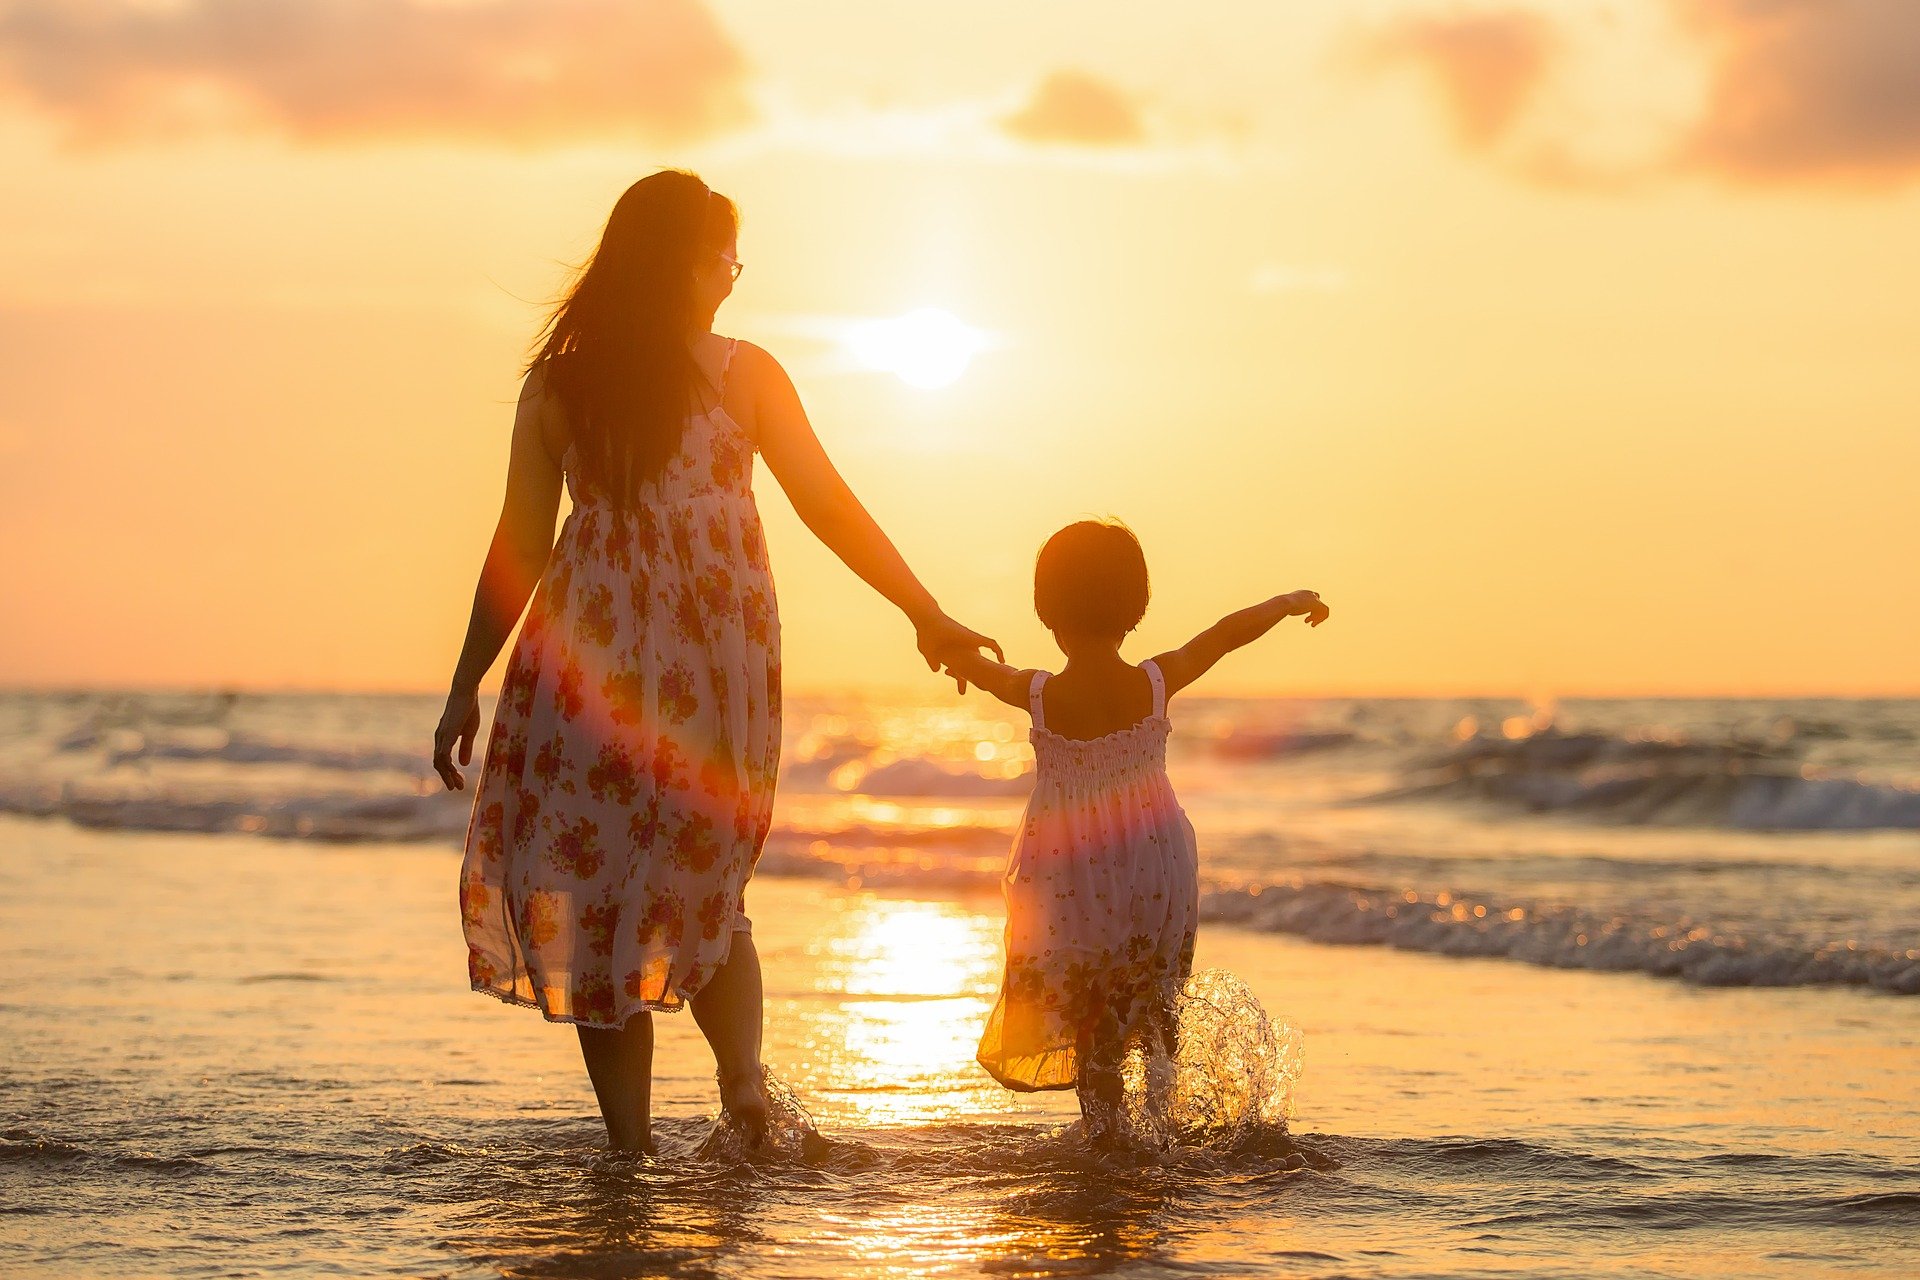 Mutter und Kind am Strand in der Abendsonne. Bild von Sasin Tipchai auf Pixabay